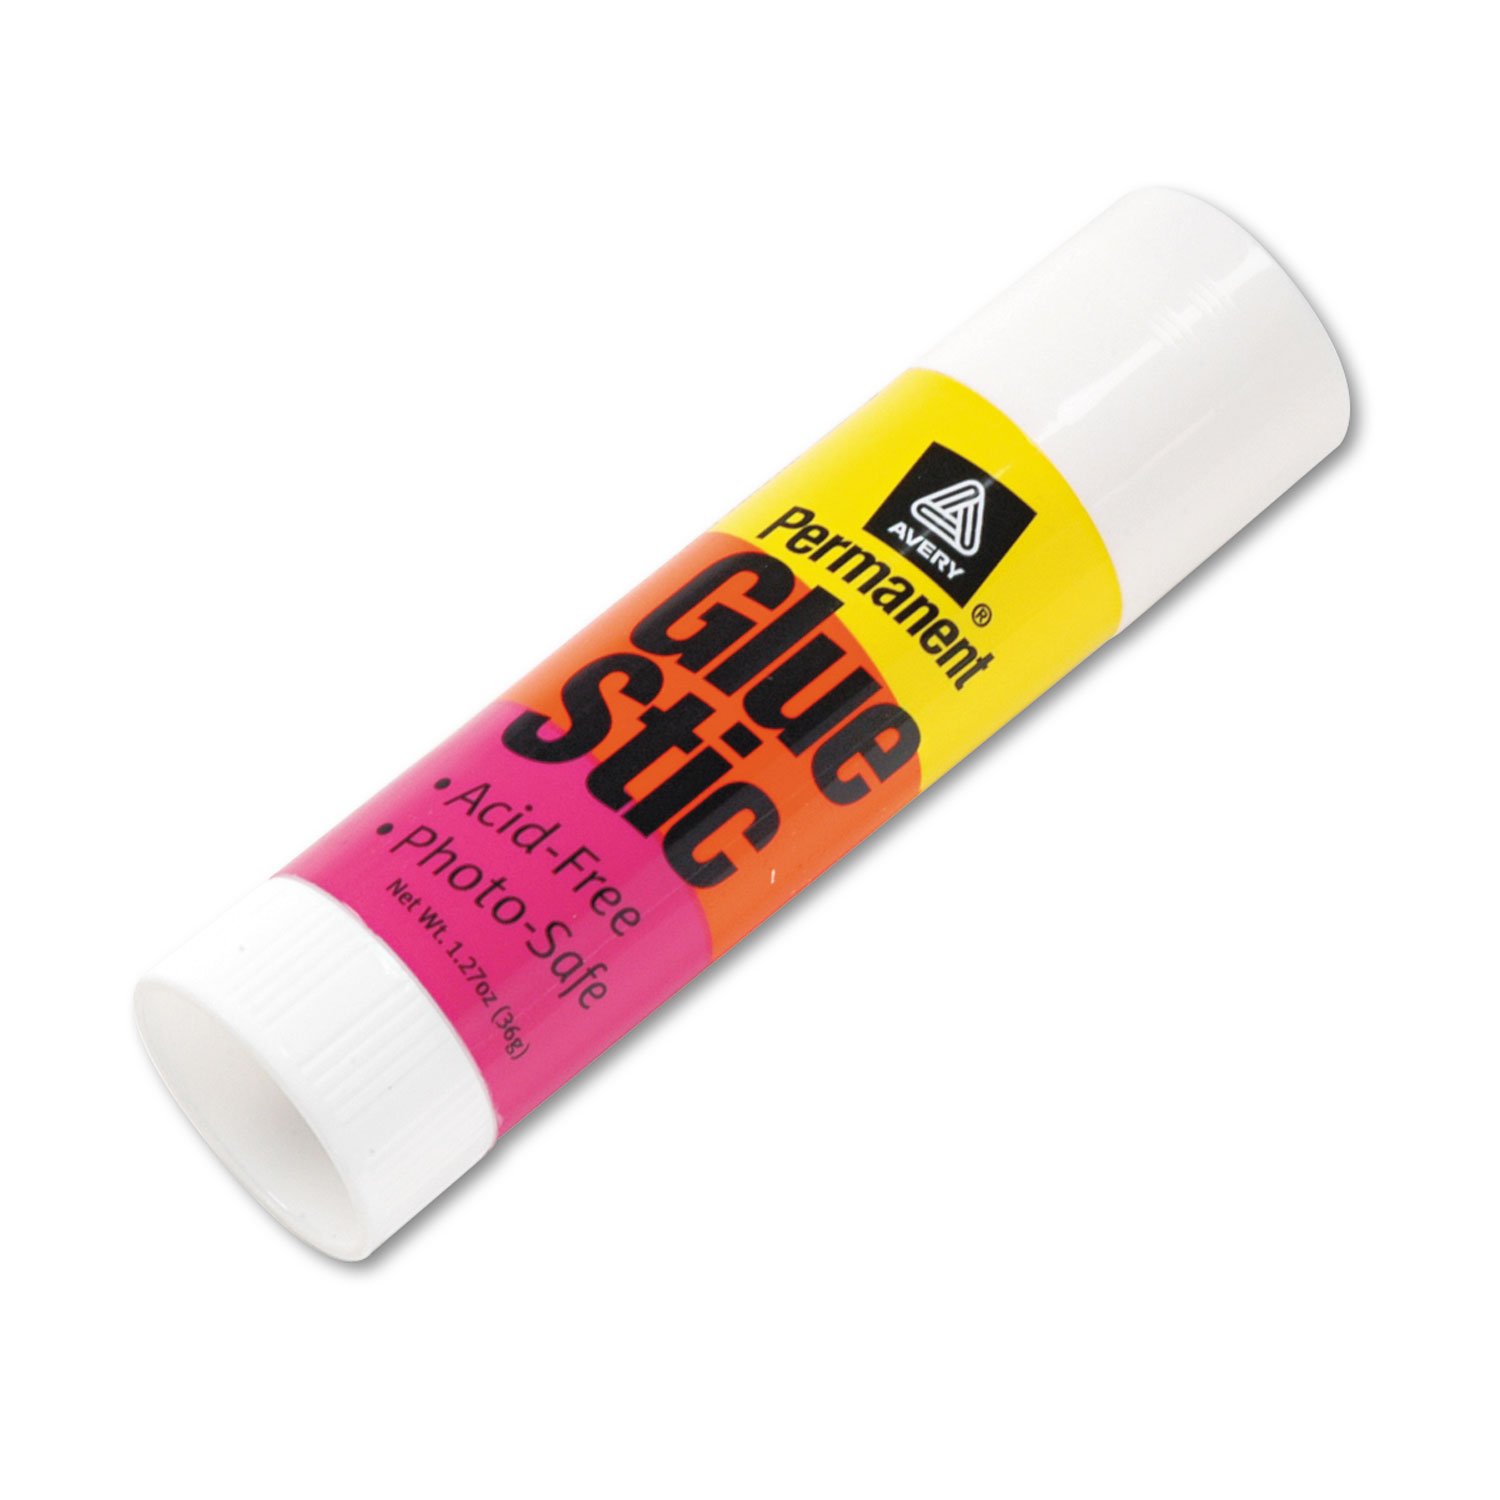 Permanent Glue Stics, White Application, 1.27 oz, Stick